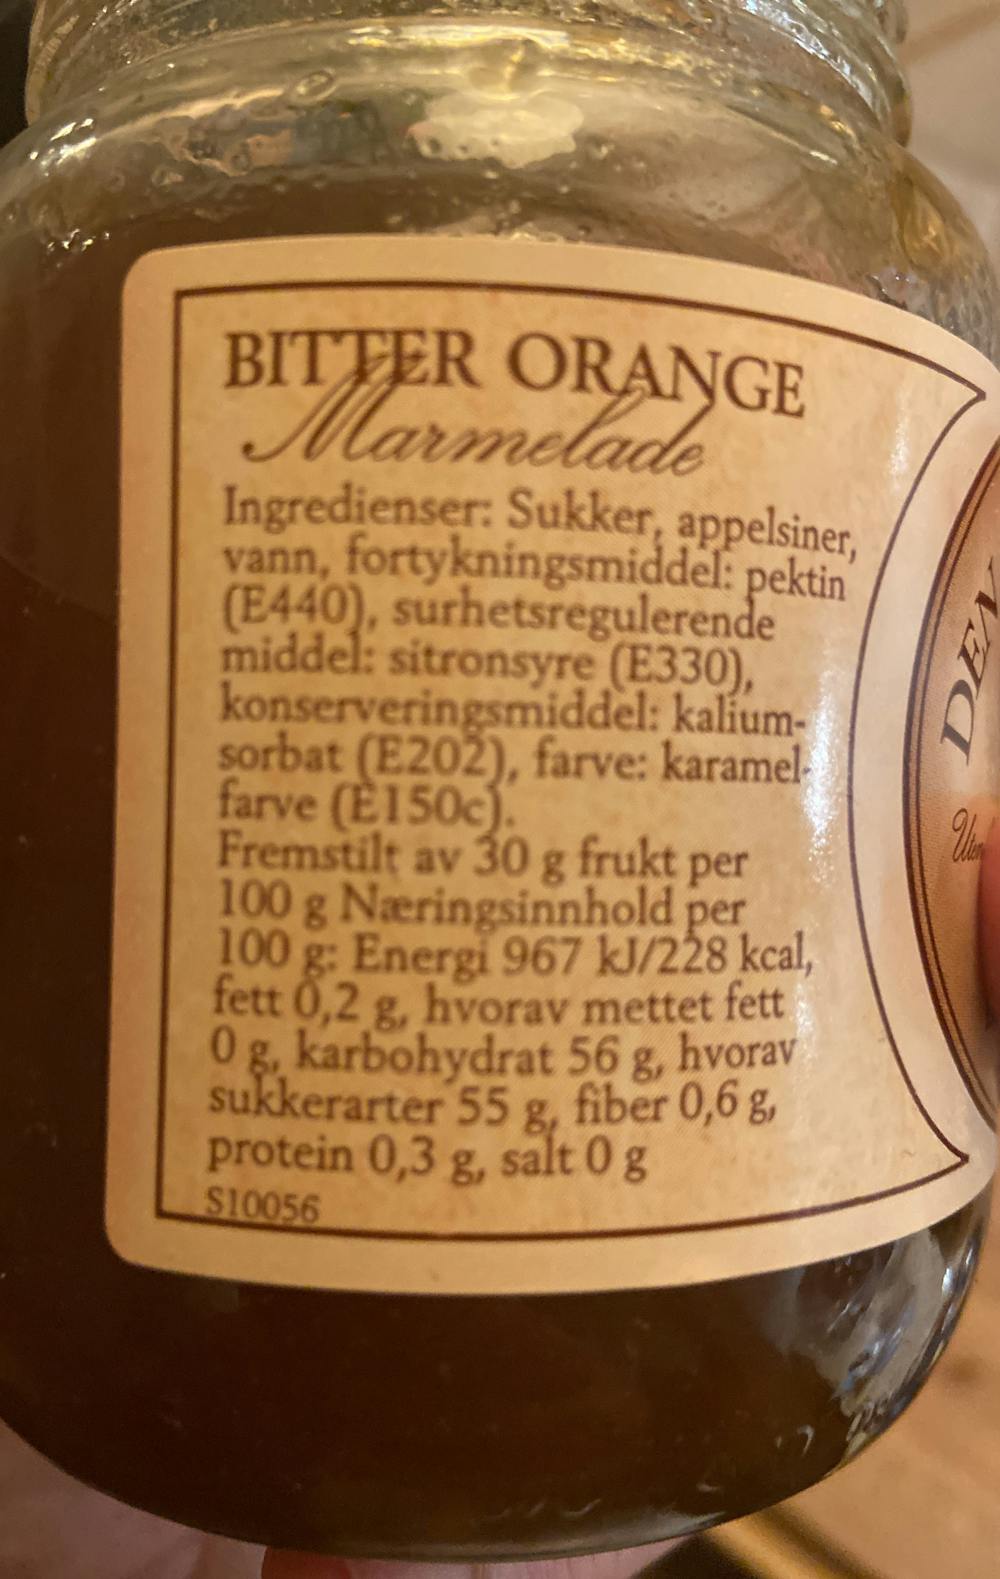 Ingredienslisten til Den gamle frugthave Bitter orange